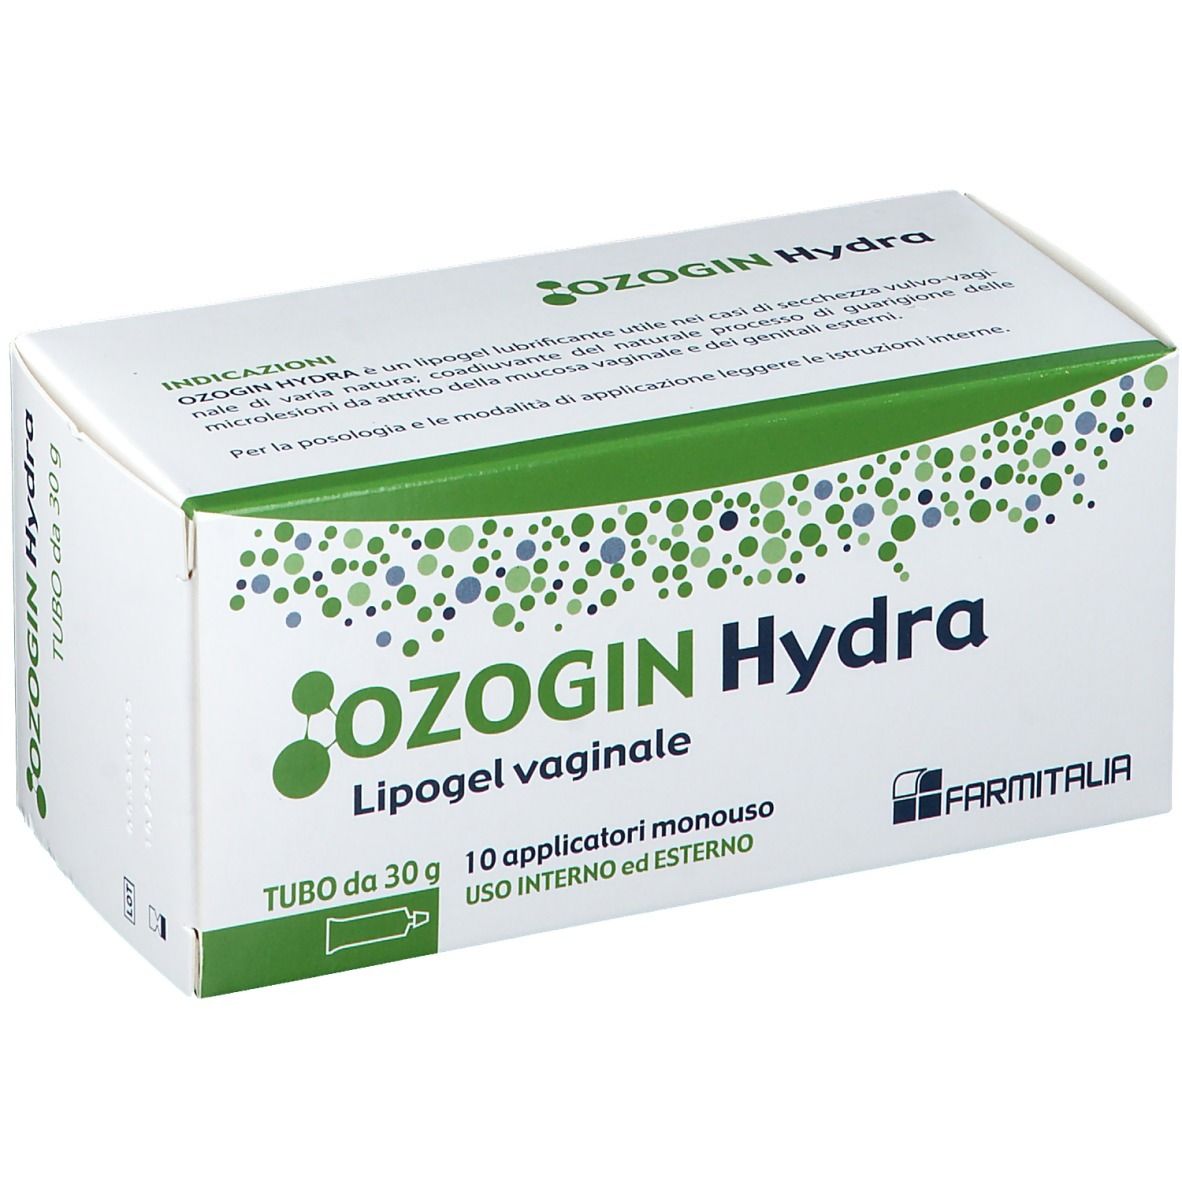 Ozogin Hydra